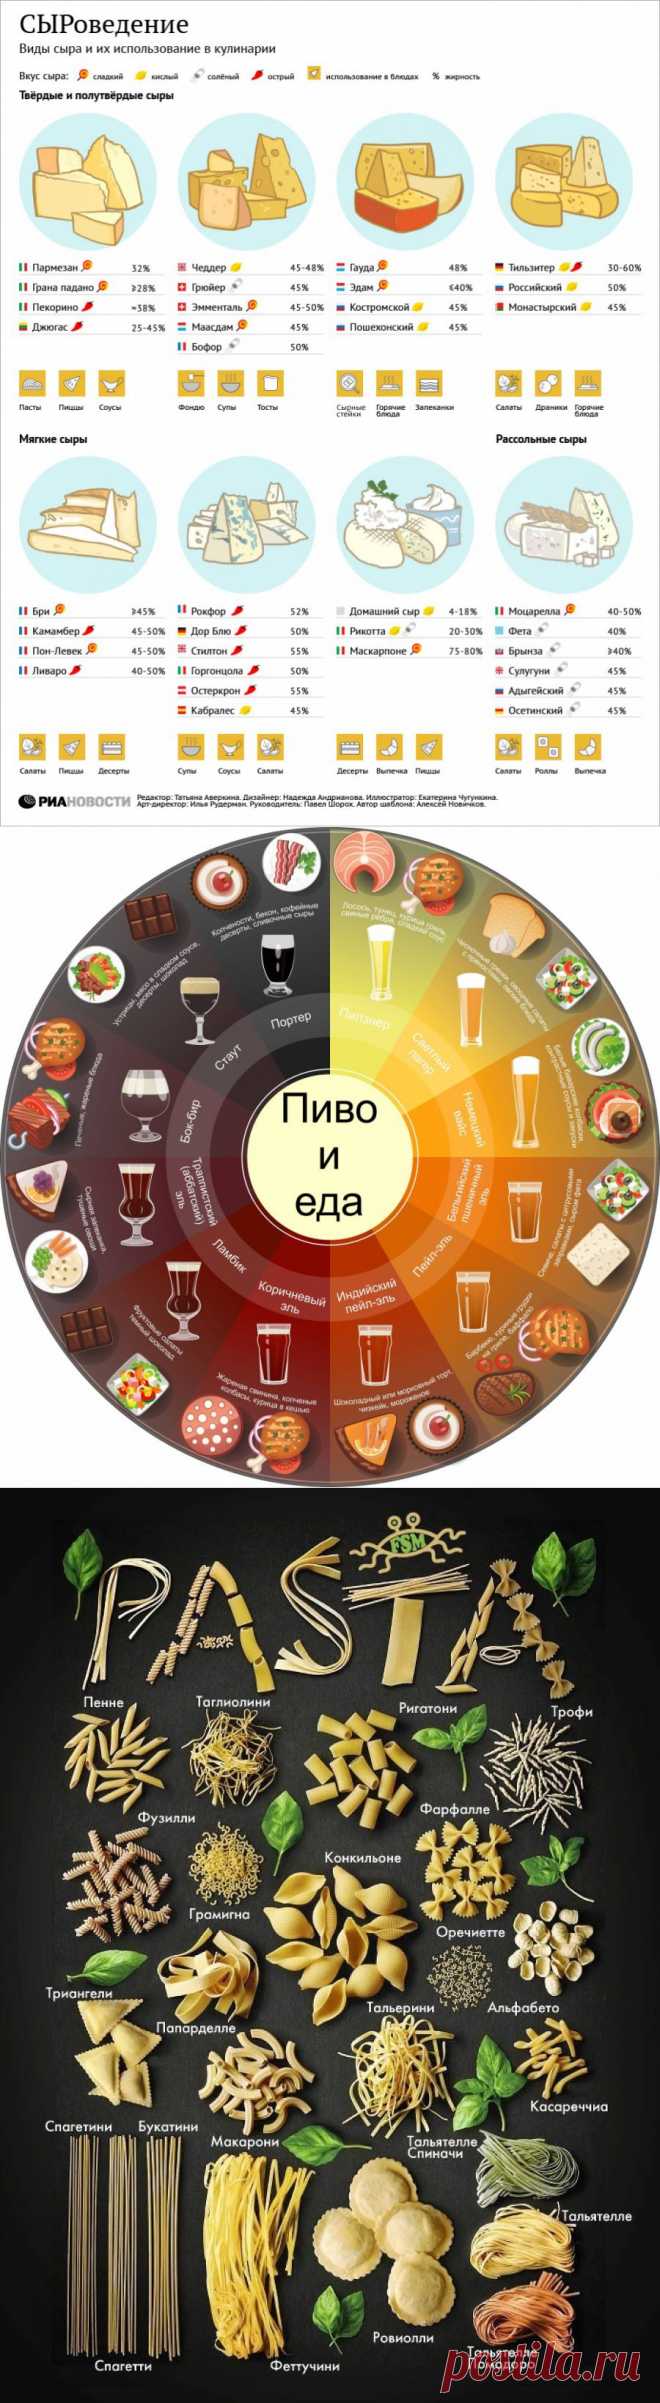 10 полезных примеров инфографики о еде и всем, что с ней связано | Prikolisti.com